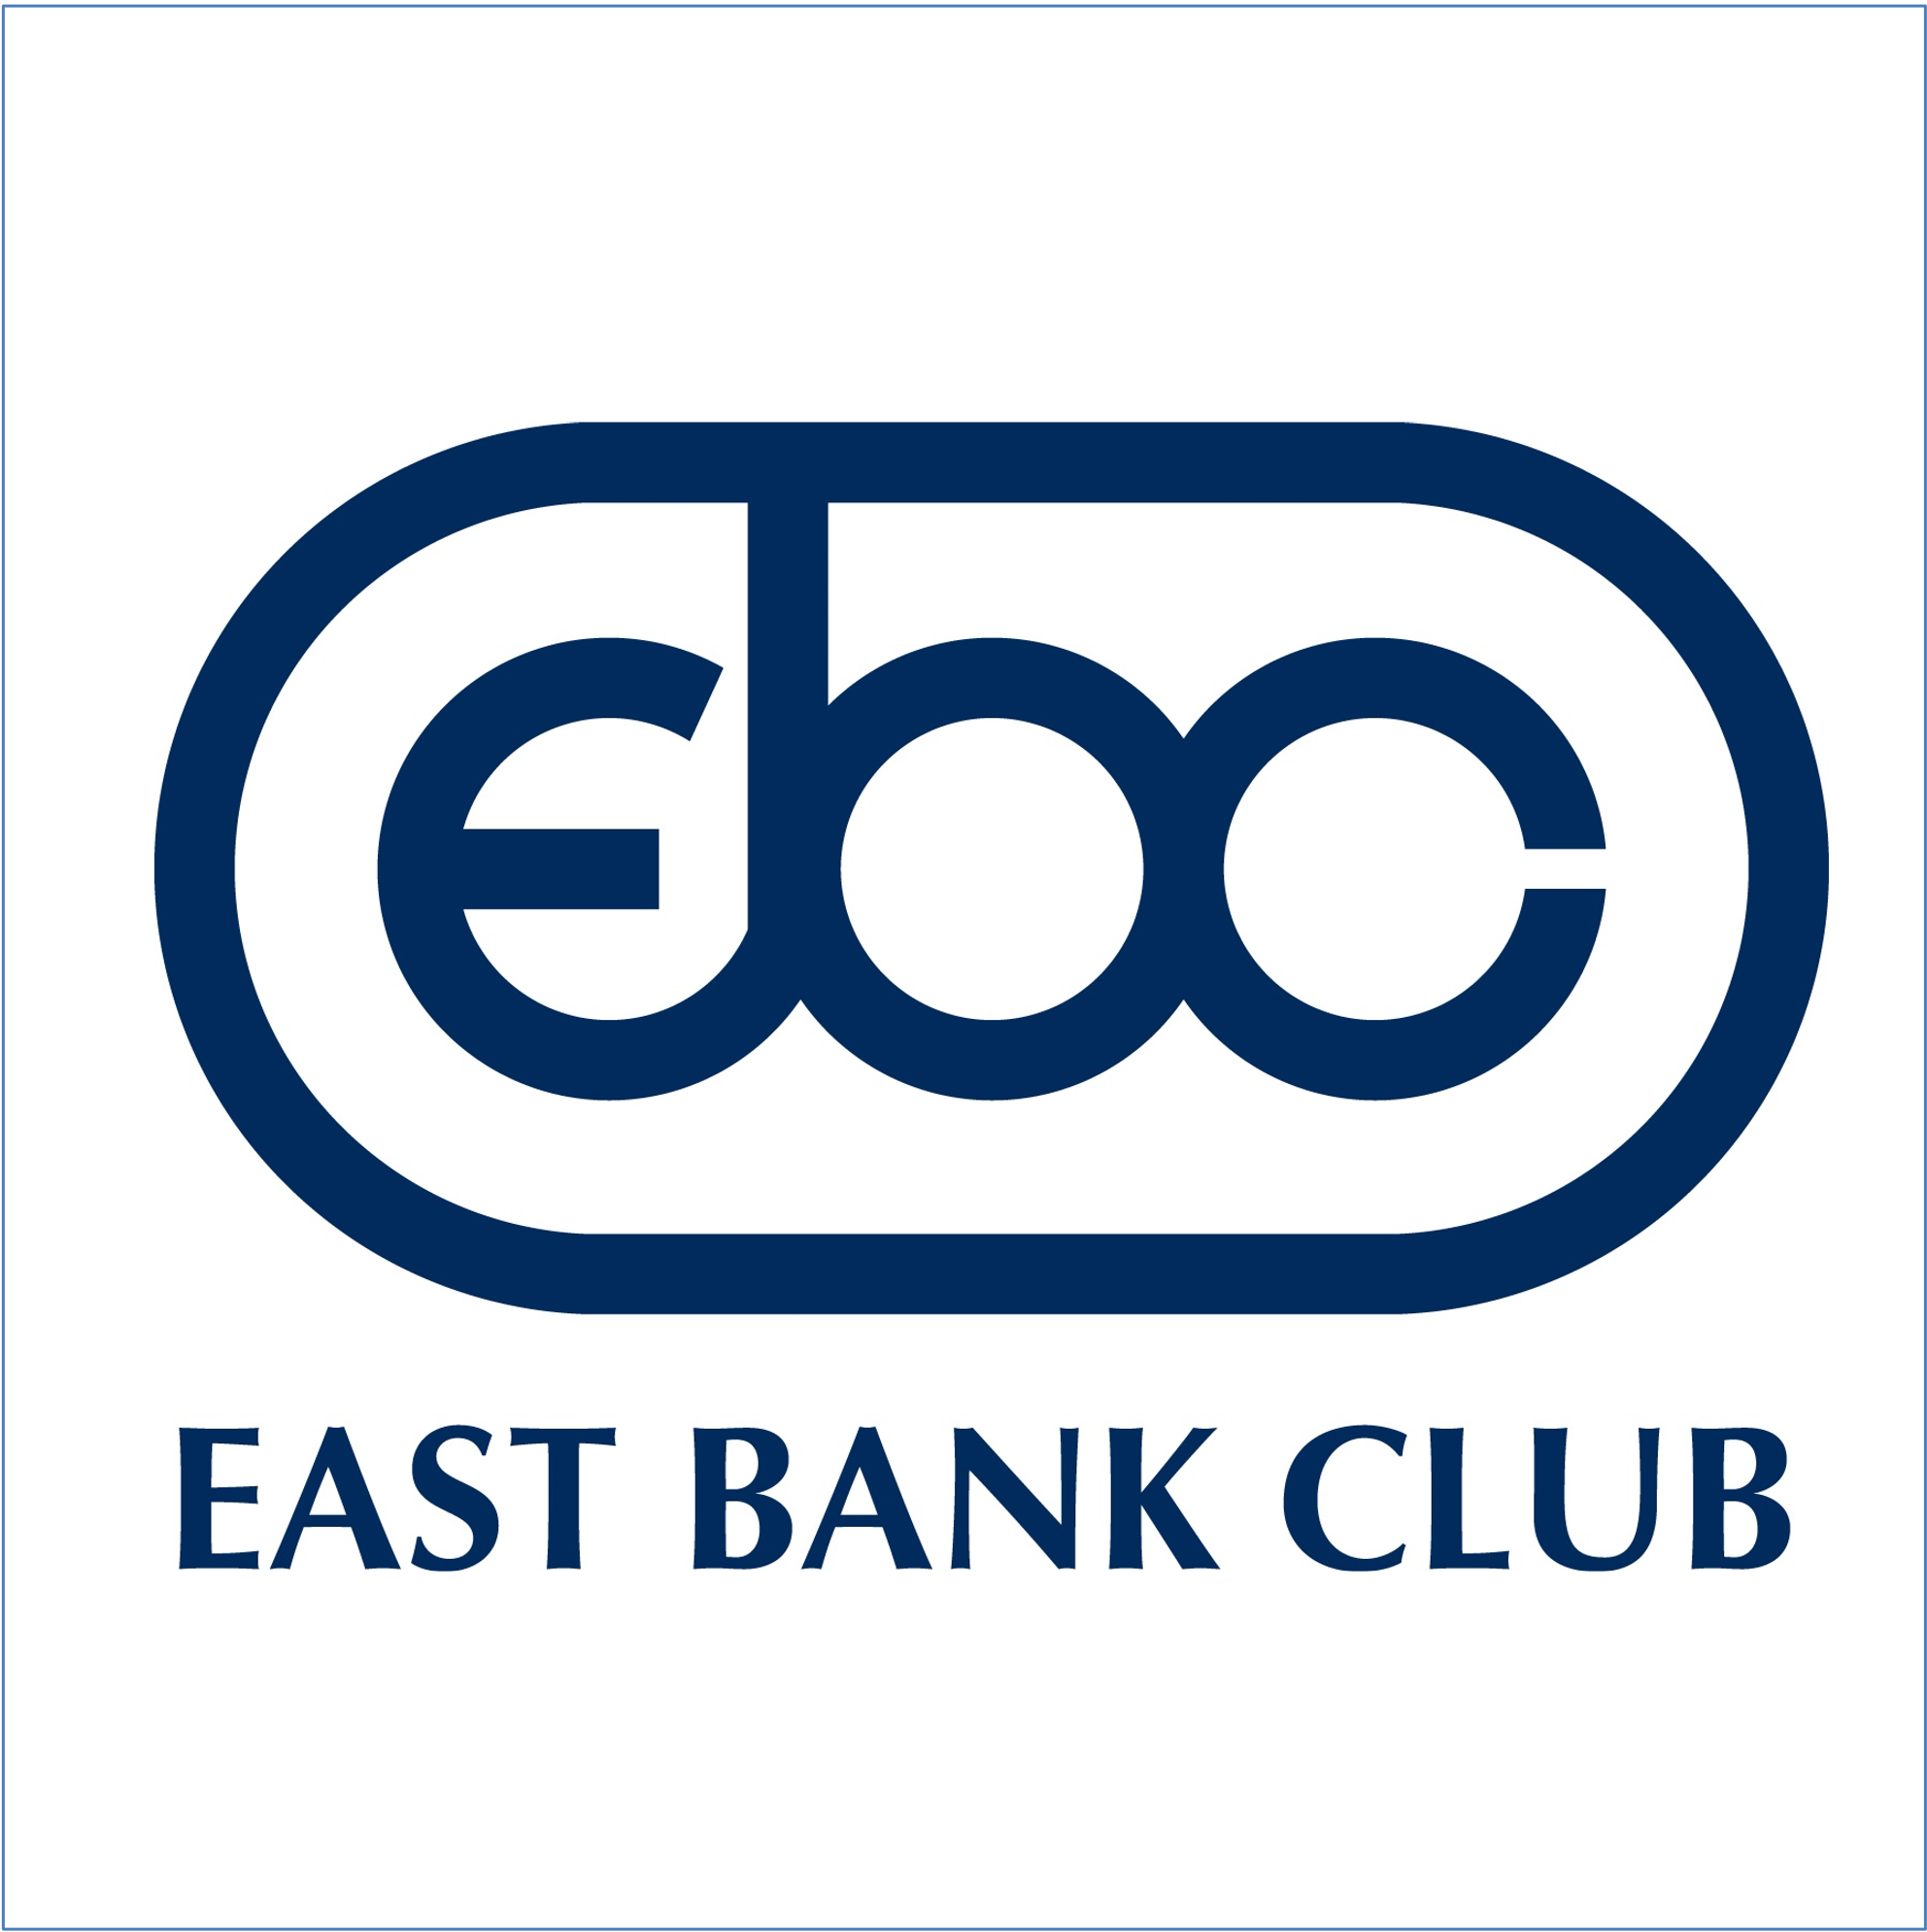 East Bank Club